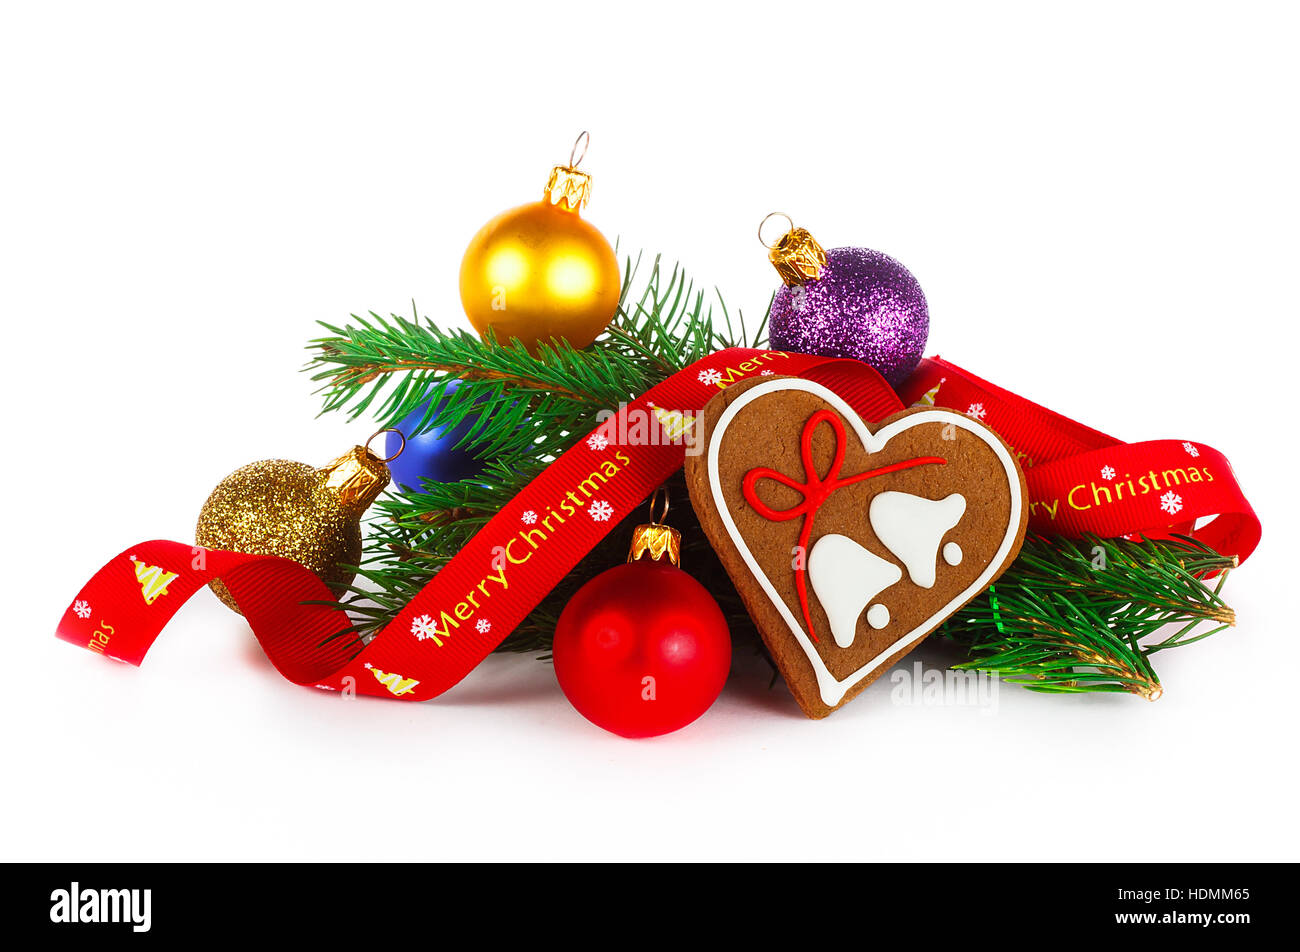 Weihnachten-Zusammensetzung - Lebkuchen und Dekorationen auf weißem Hintergrund Stockfoto